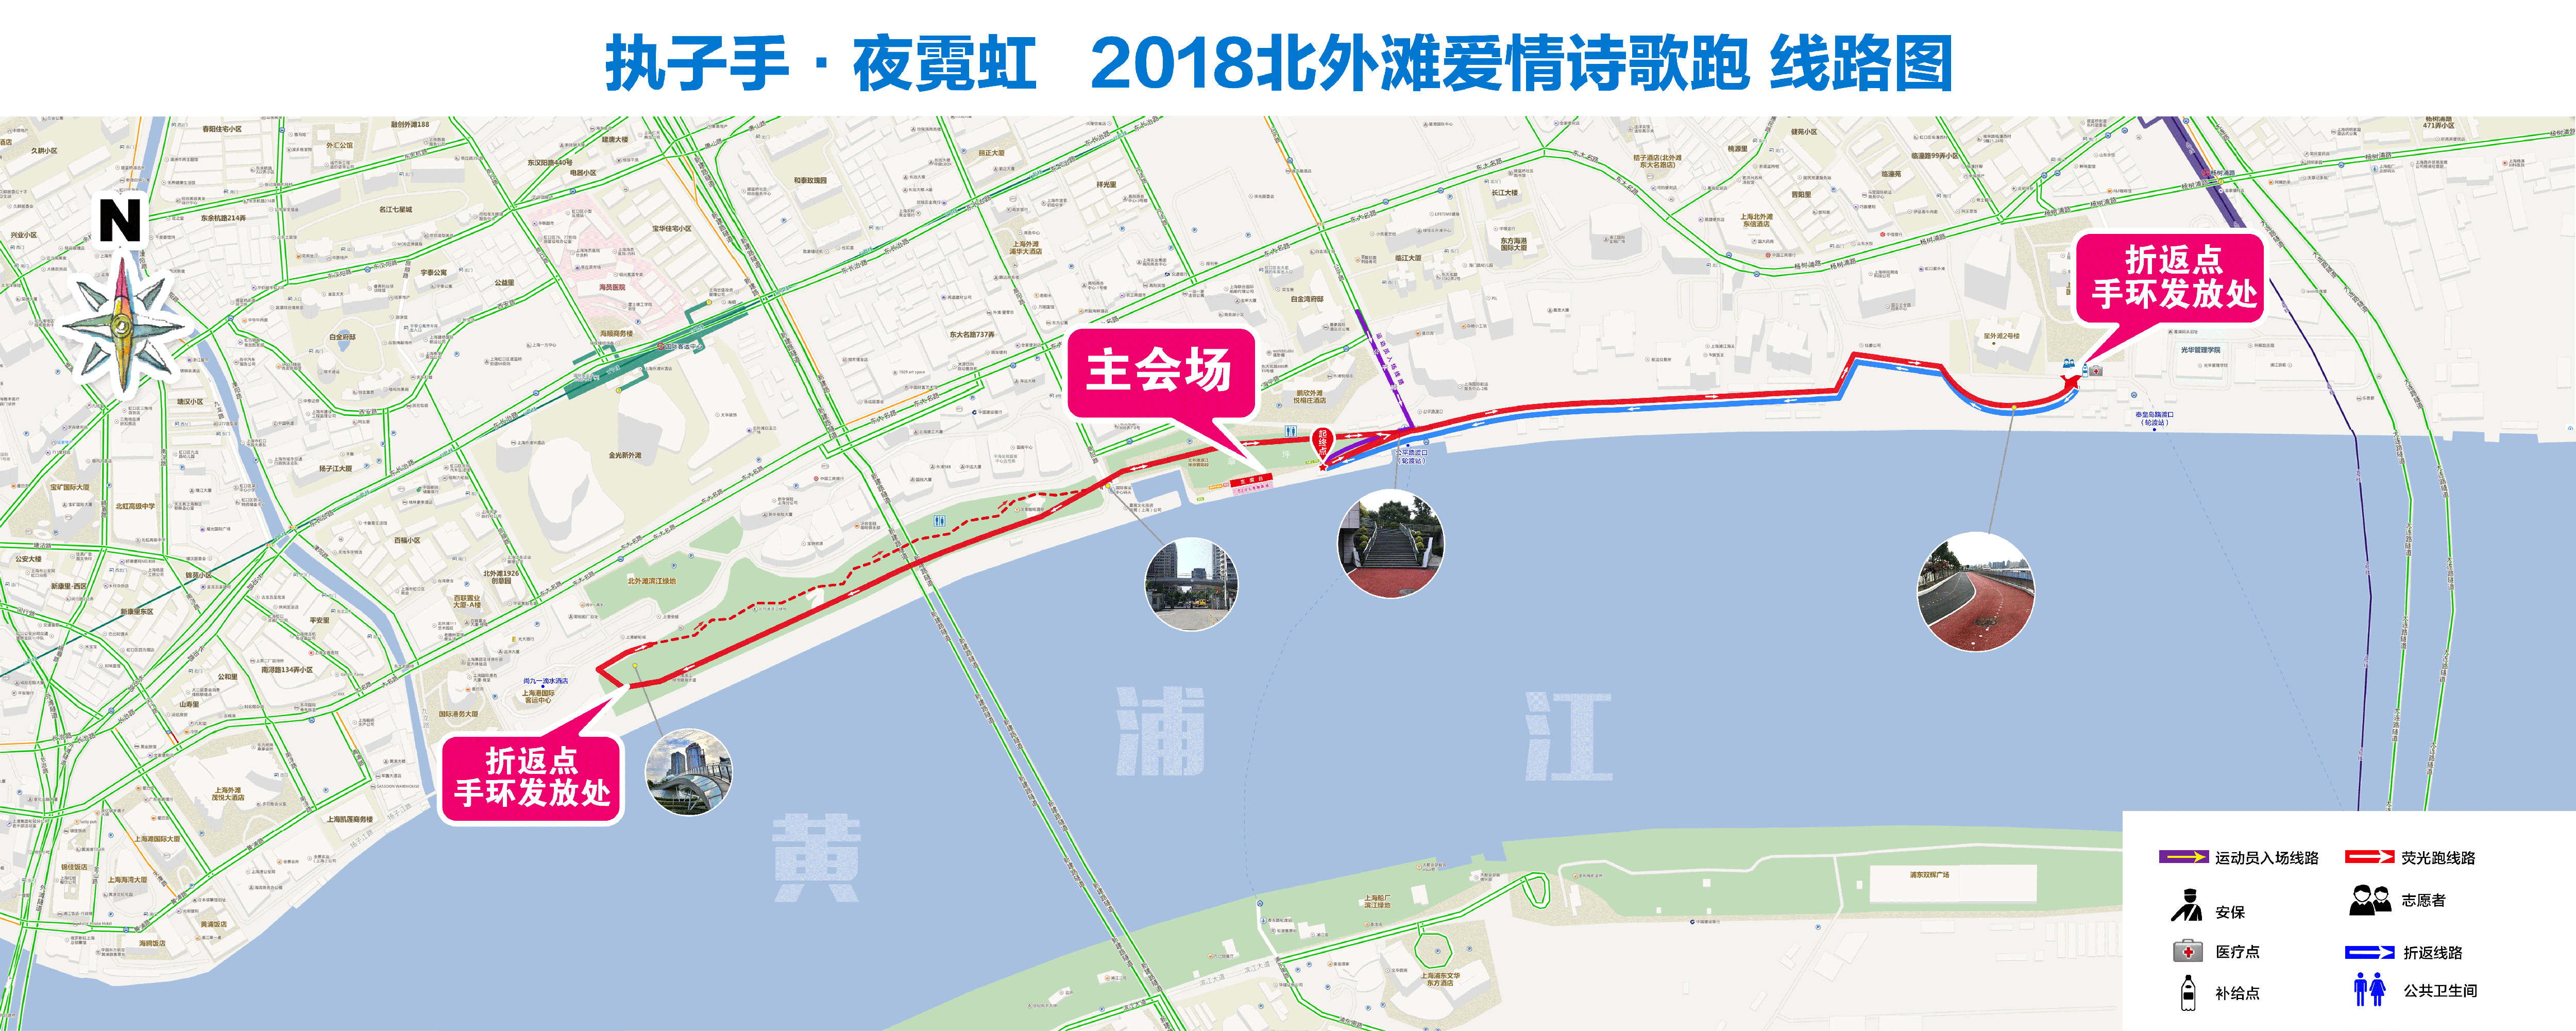 00整(18:45-19:30签到入场) 活动路线: 起终点:北外滩滨江绿地置阳段